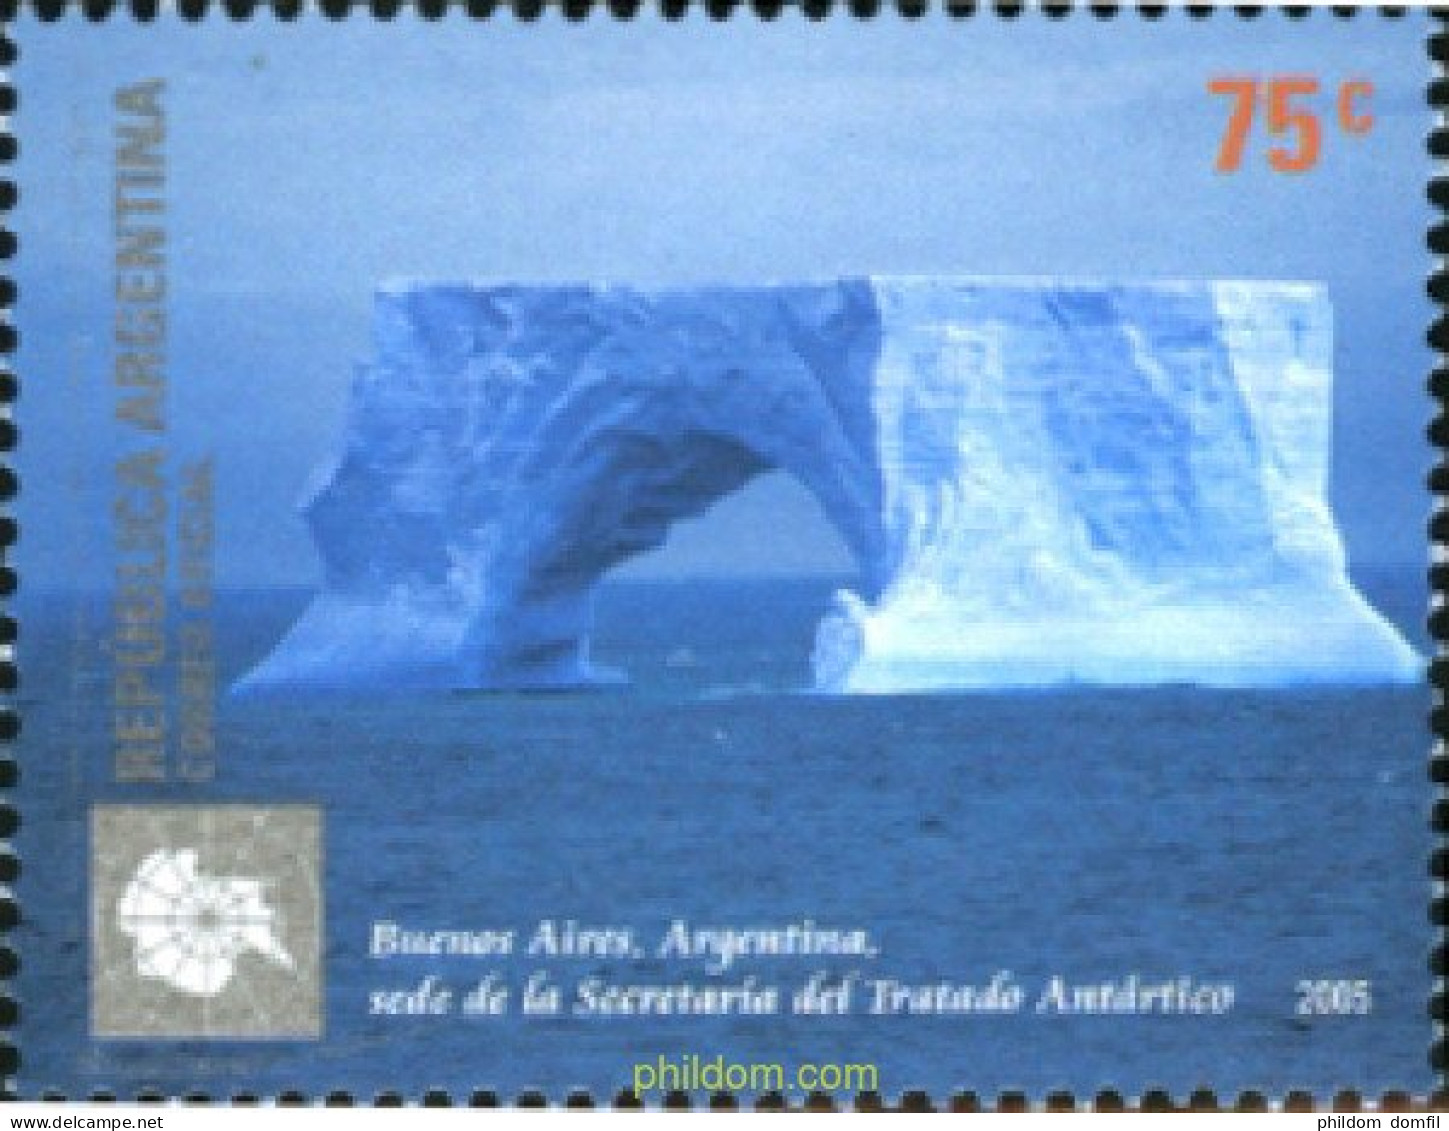 186339 MNH ARGENTINA 2005 ANTARTIDA ARGENTINA - Unused Stamps